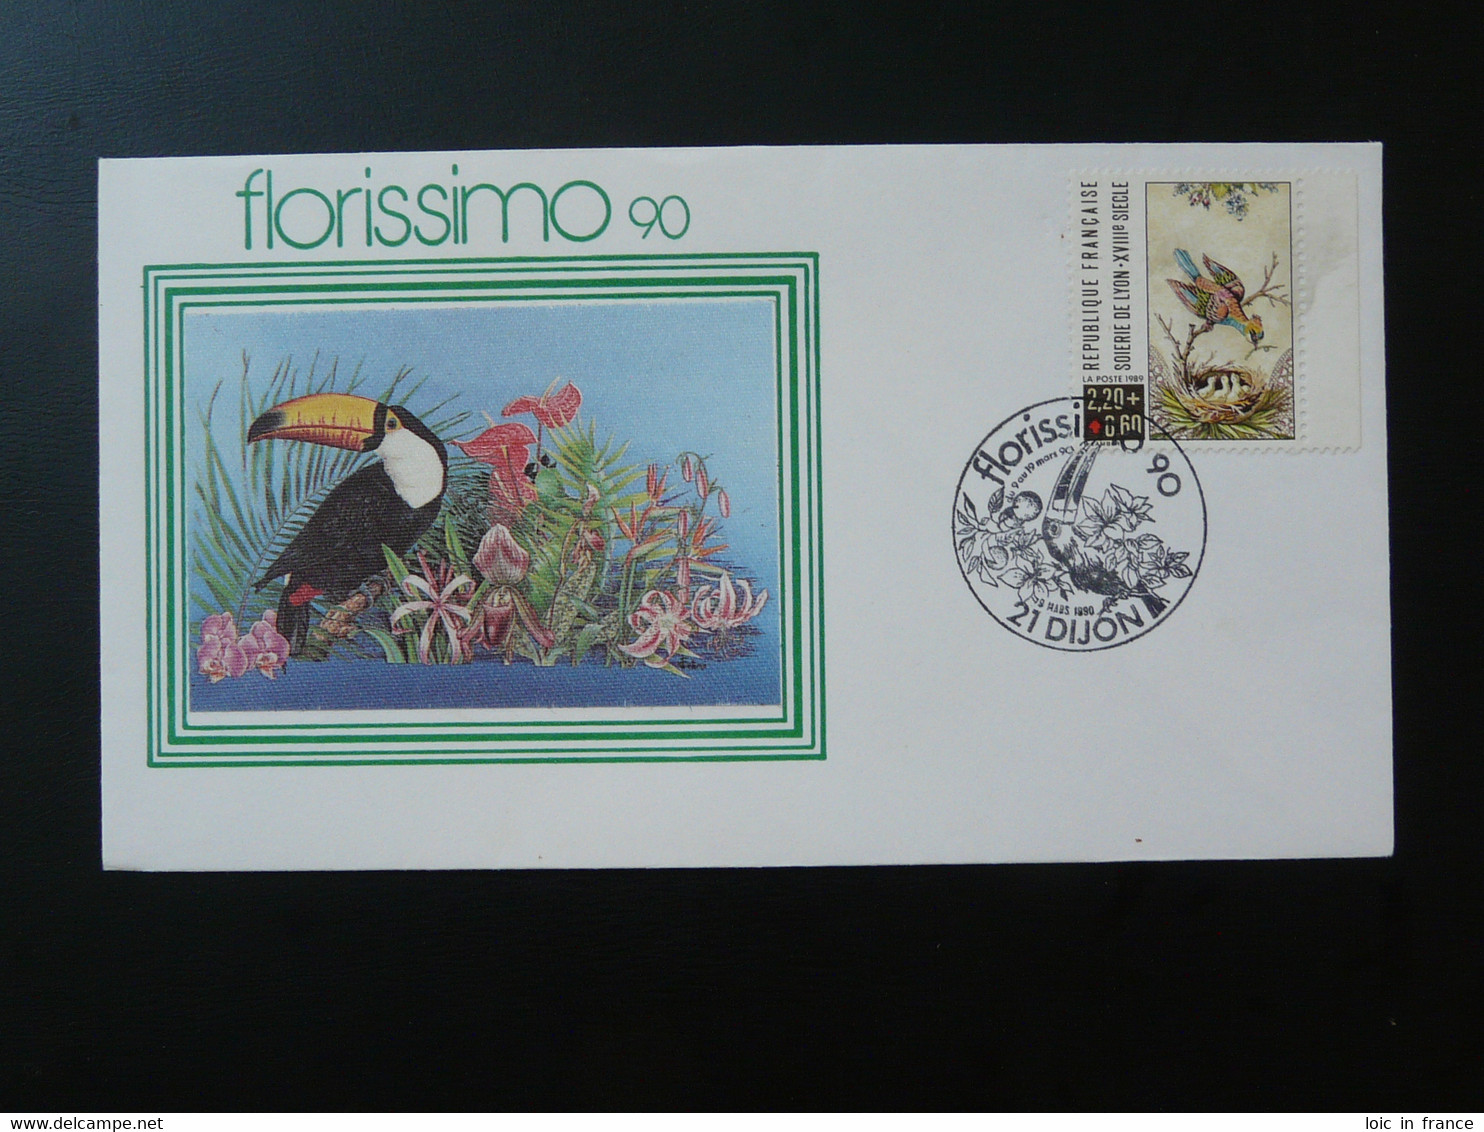 Lettre Cover Oiseau Toucan Bird Florissimo Dijon 21 Cote D'Or 1990 - Obliteraciones & Sellados Mecánicos (Publicitarios)